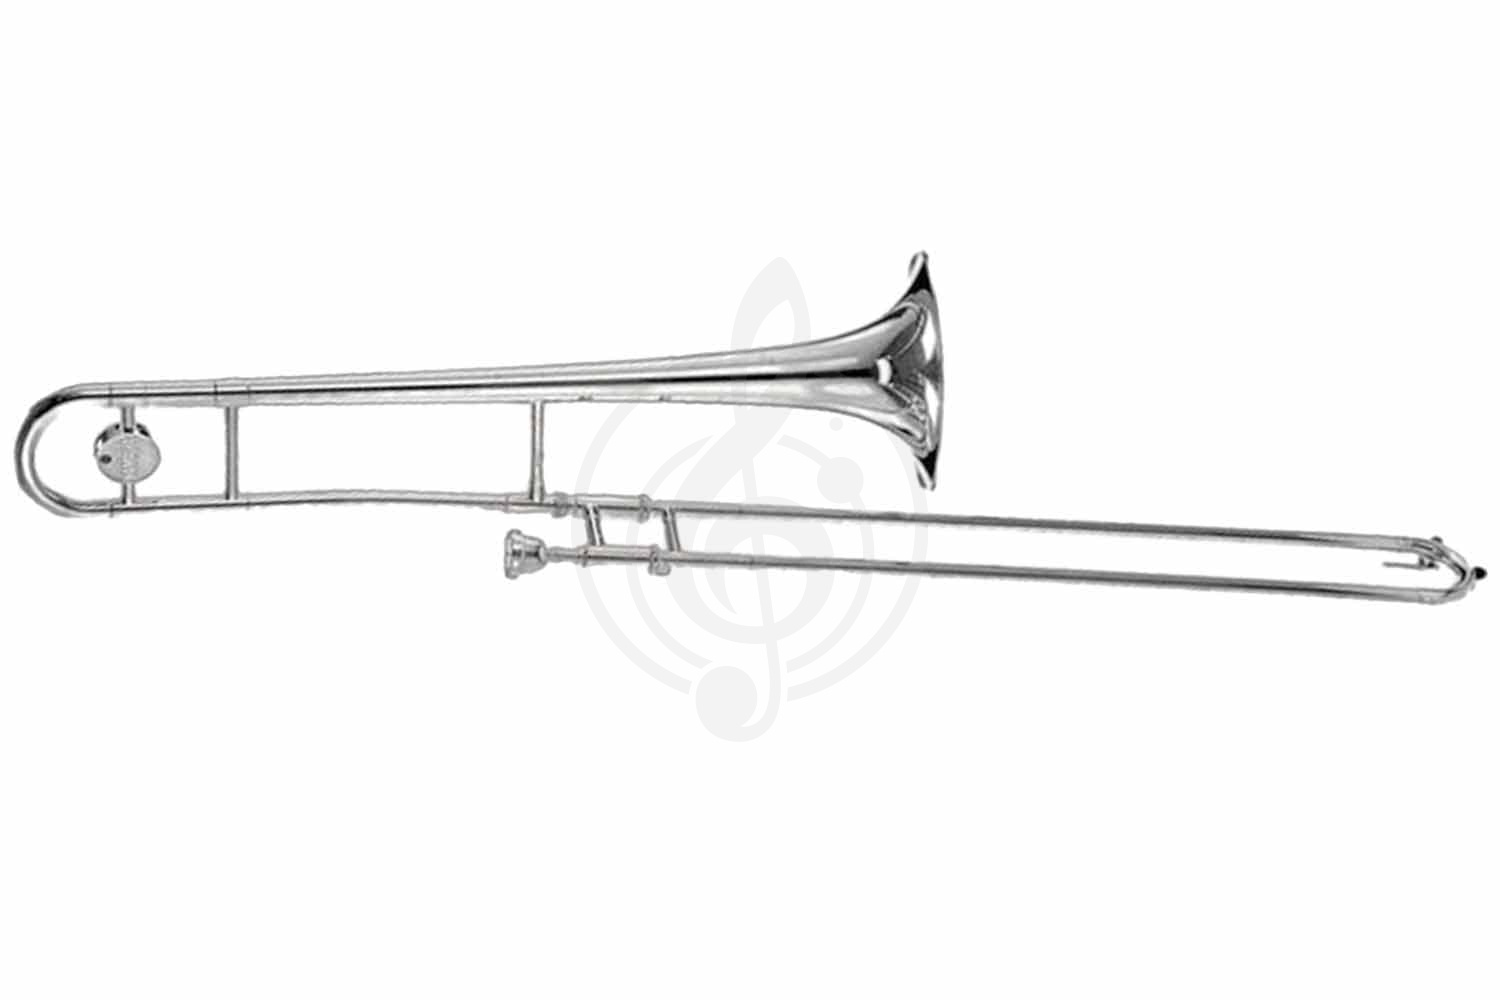 Тромбон Тромбоны Yamaha Yamaha YBL-421GS - бас-тромбон Bb/ F, 14.3/241мм, Golg-brass раструб, посеребренный YBL-421GS //E - фото 1